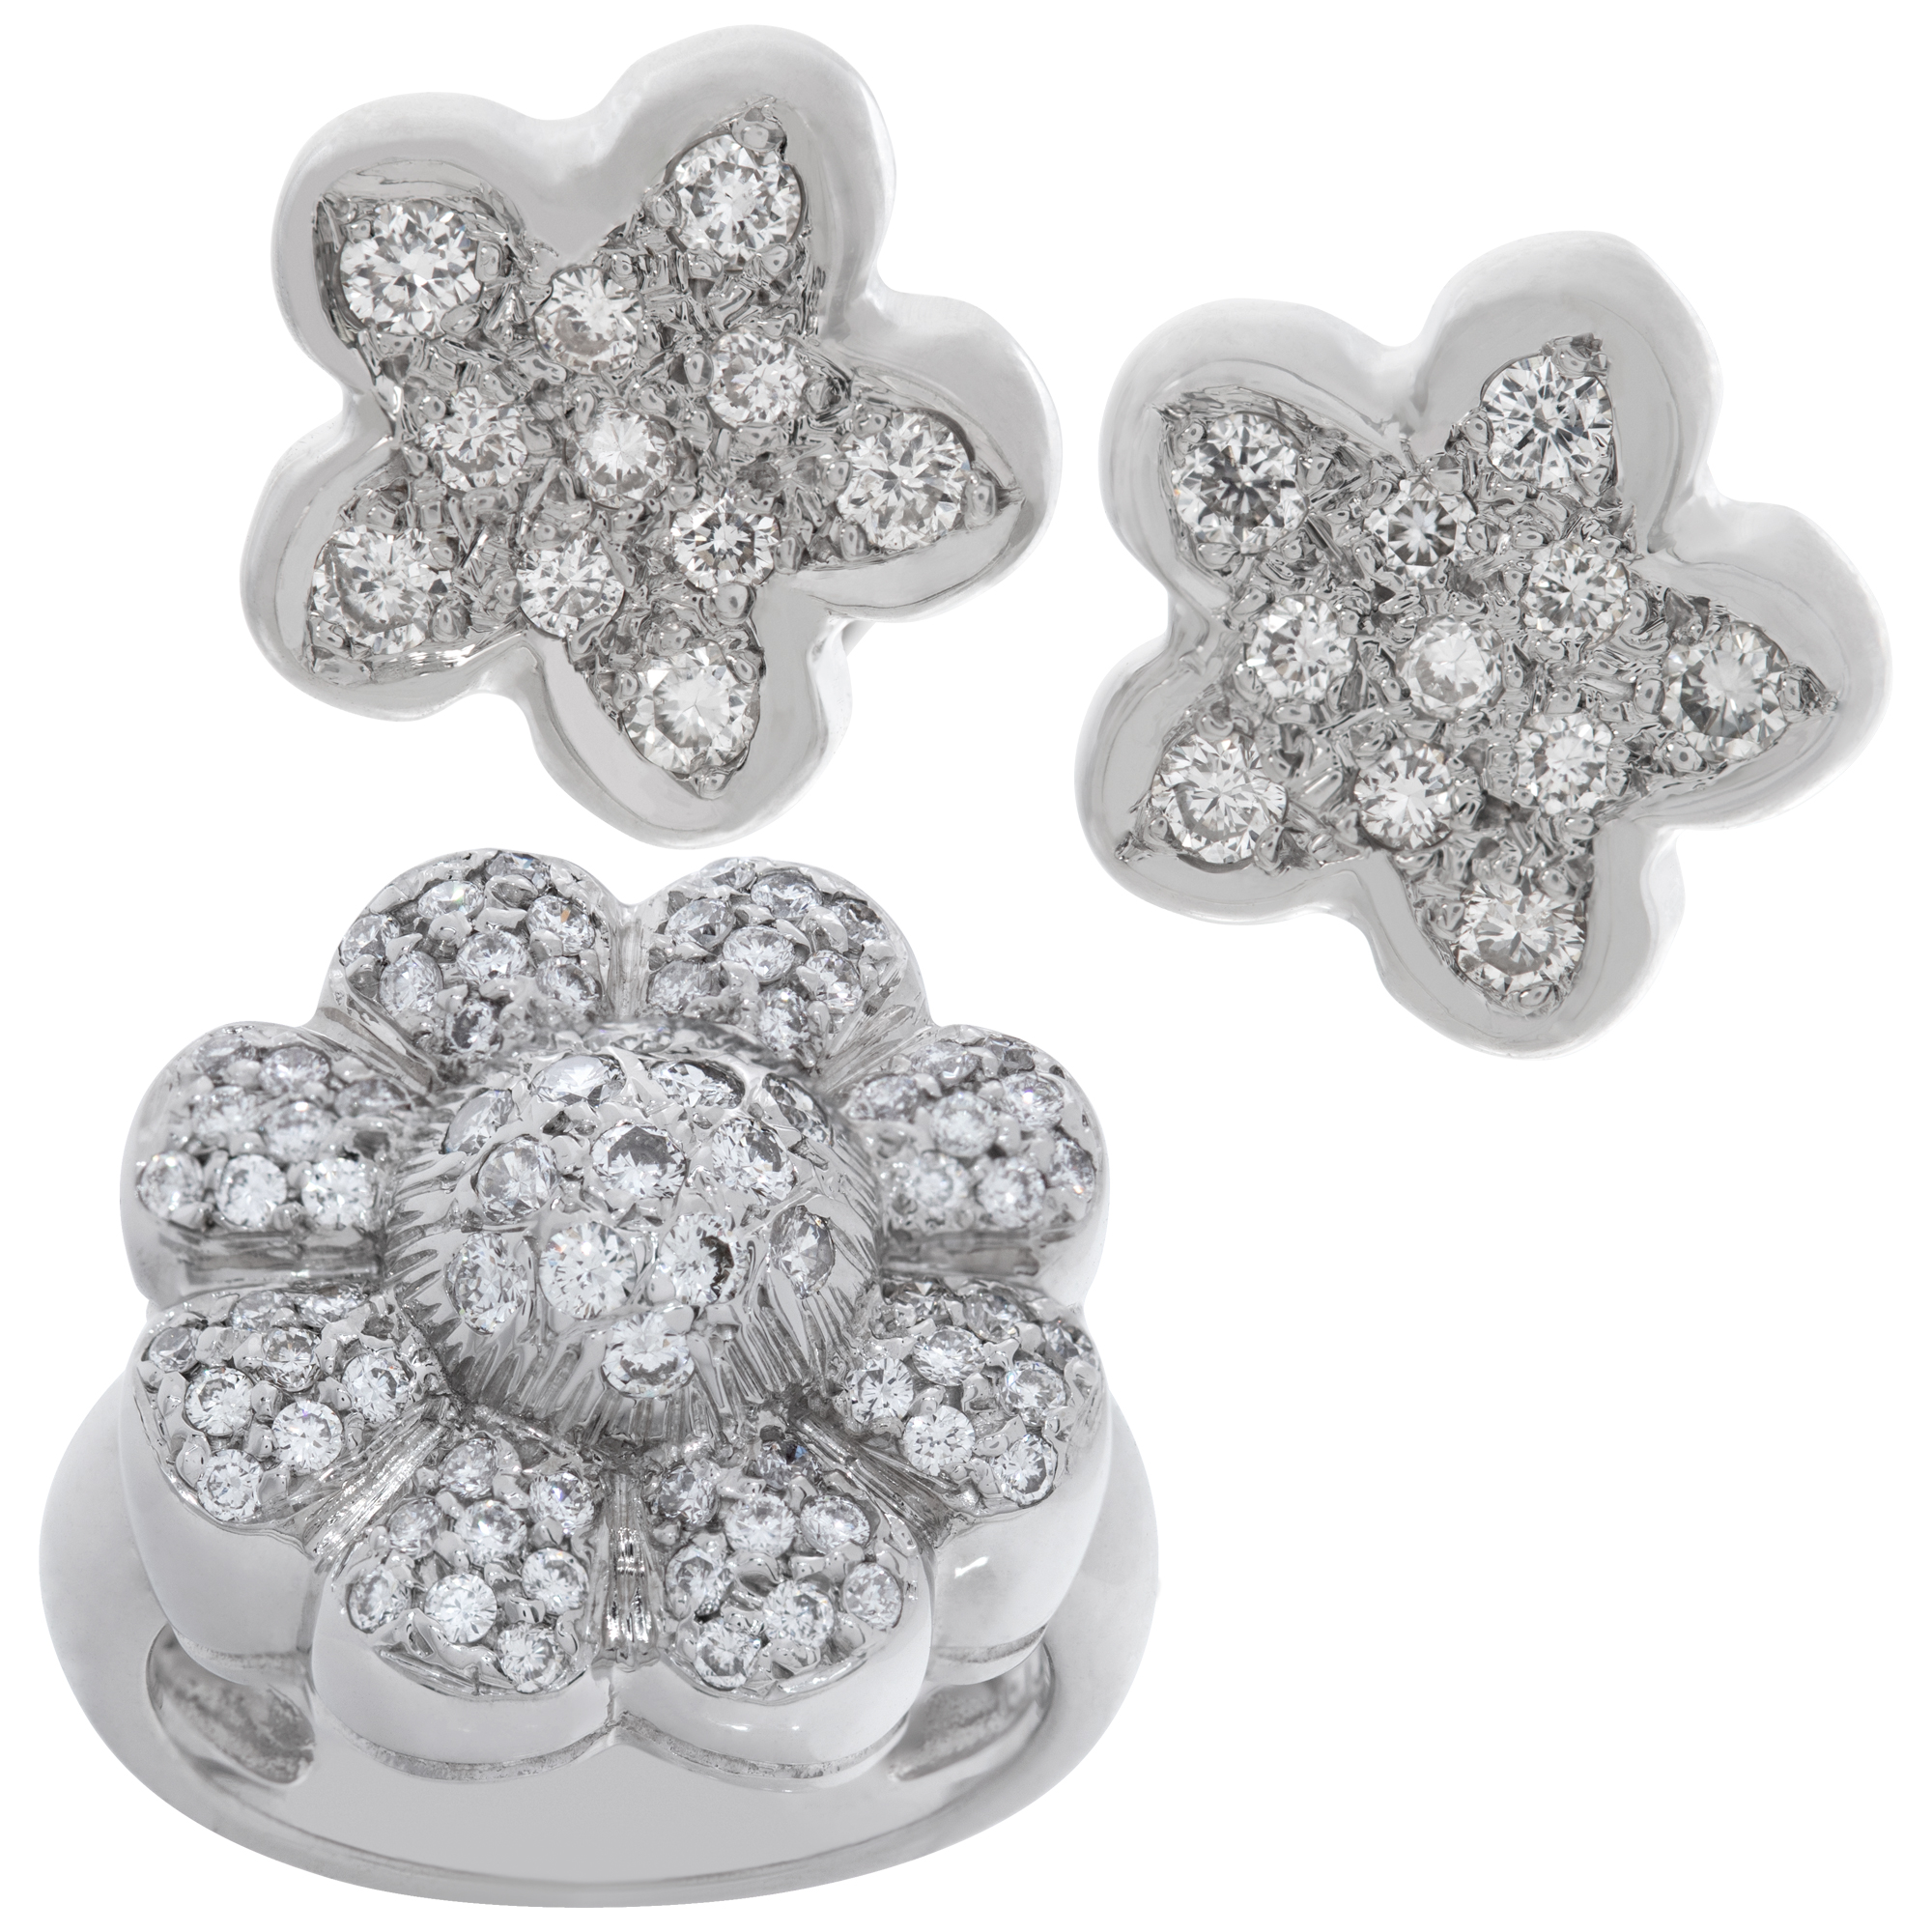 Flower diamond earrings and ring set in 18k white gold